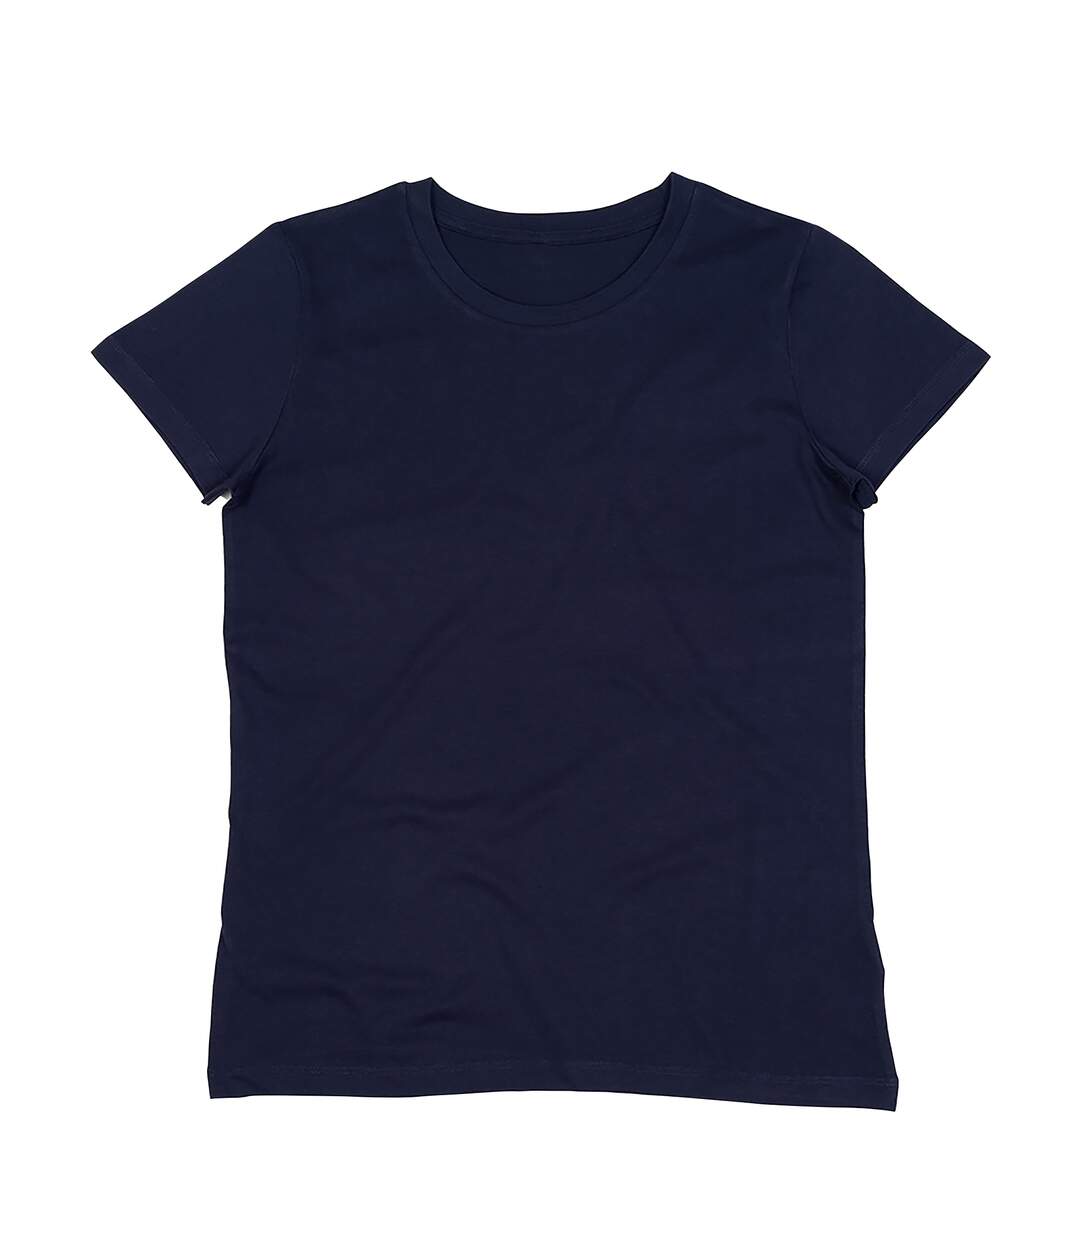 Mantis - T-shirt ESSENTIAL - Femme (Bleu marine) - UTPC3965